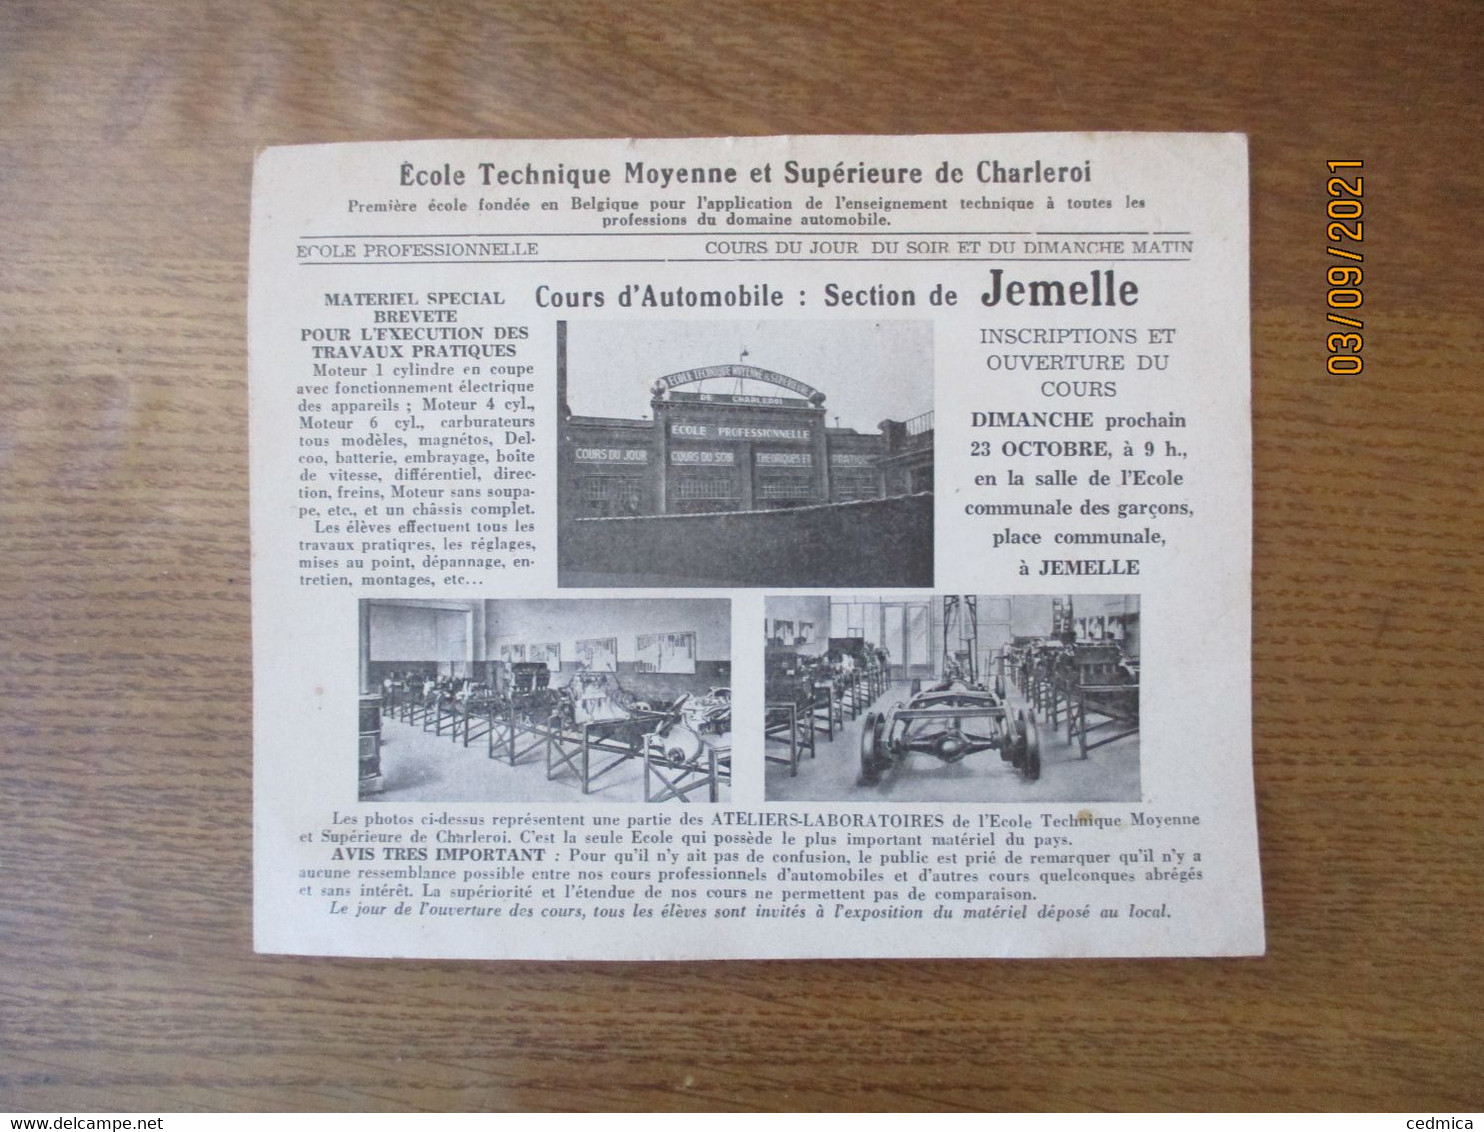 CHARLEROI 18 OCTOBRE 1938 ECOLE TECHNIQUE MOYENNE ET SUPERIEURE COURS D'AUTOMOBILE SECTION DE JEMELLE - Advertising